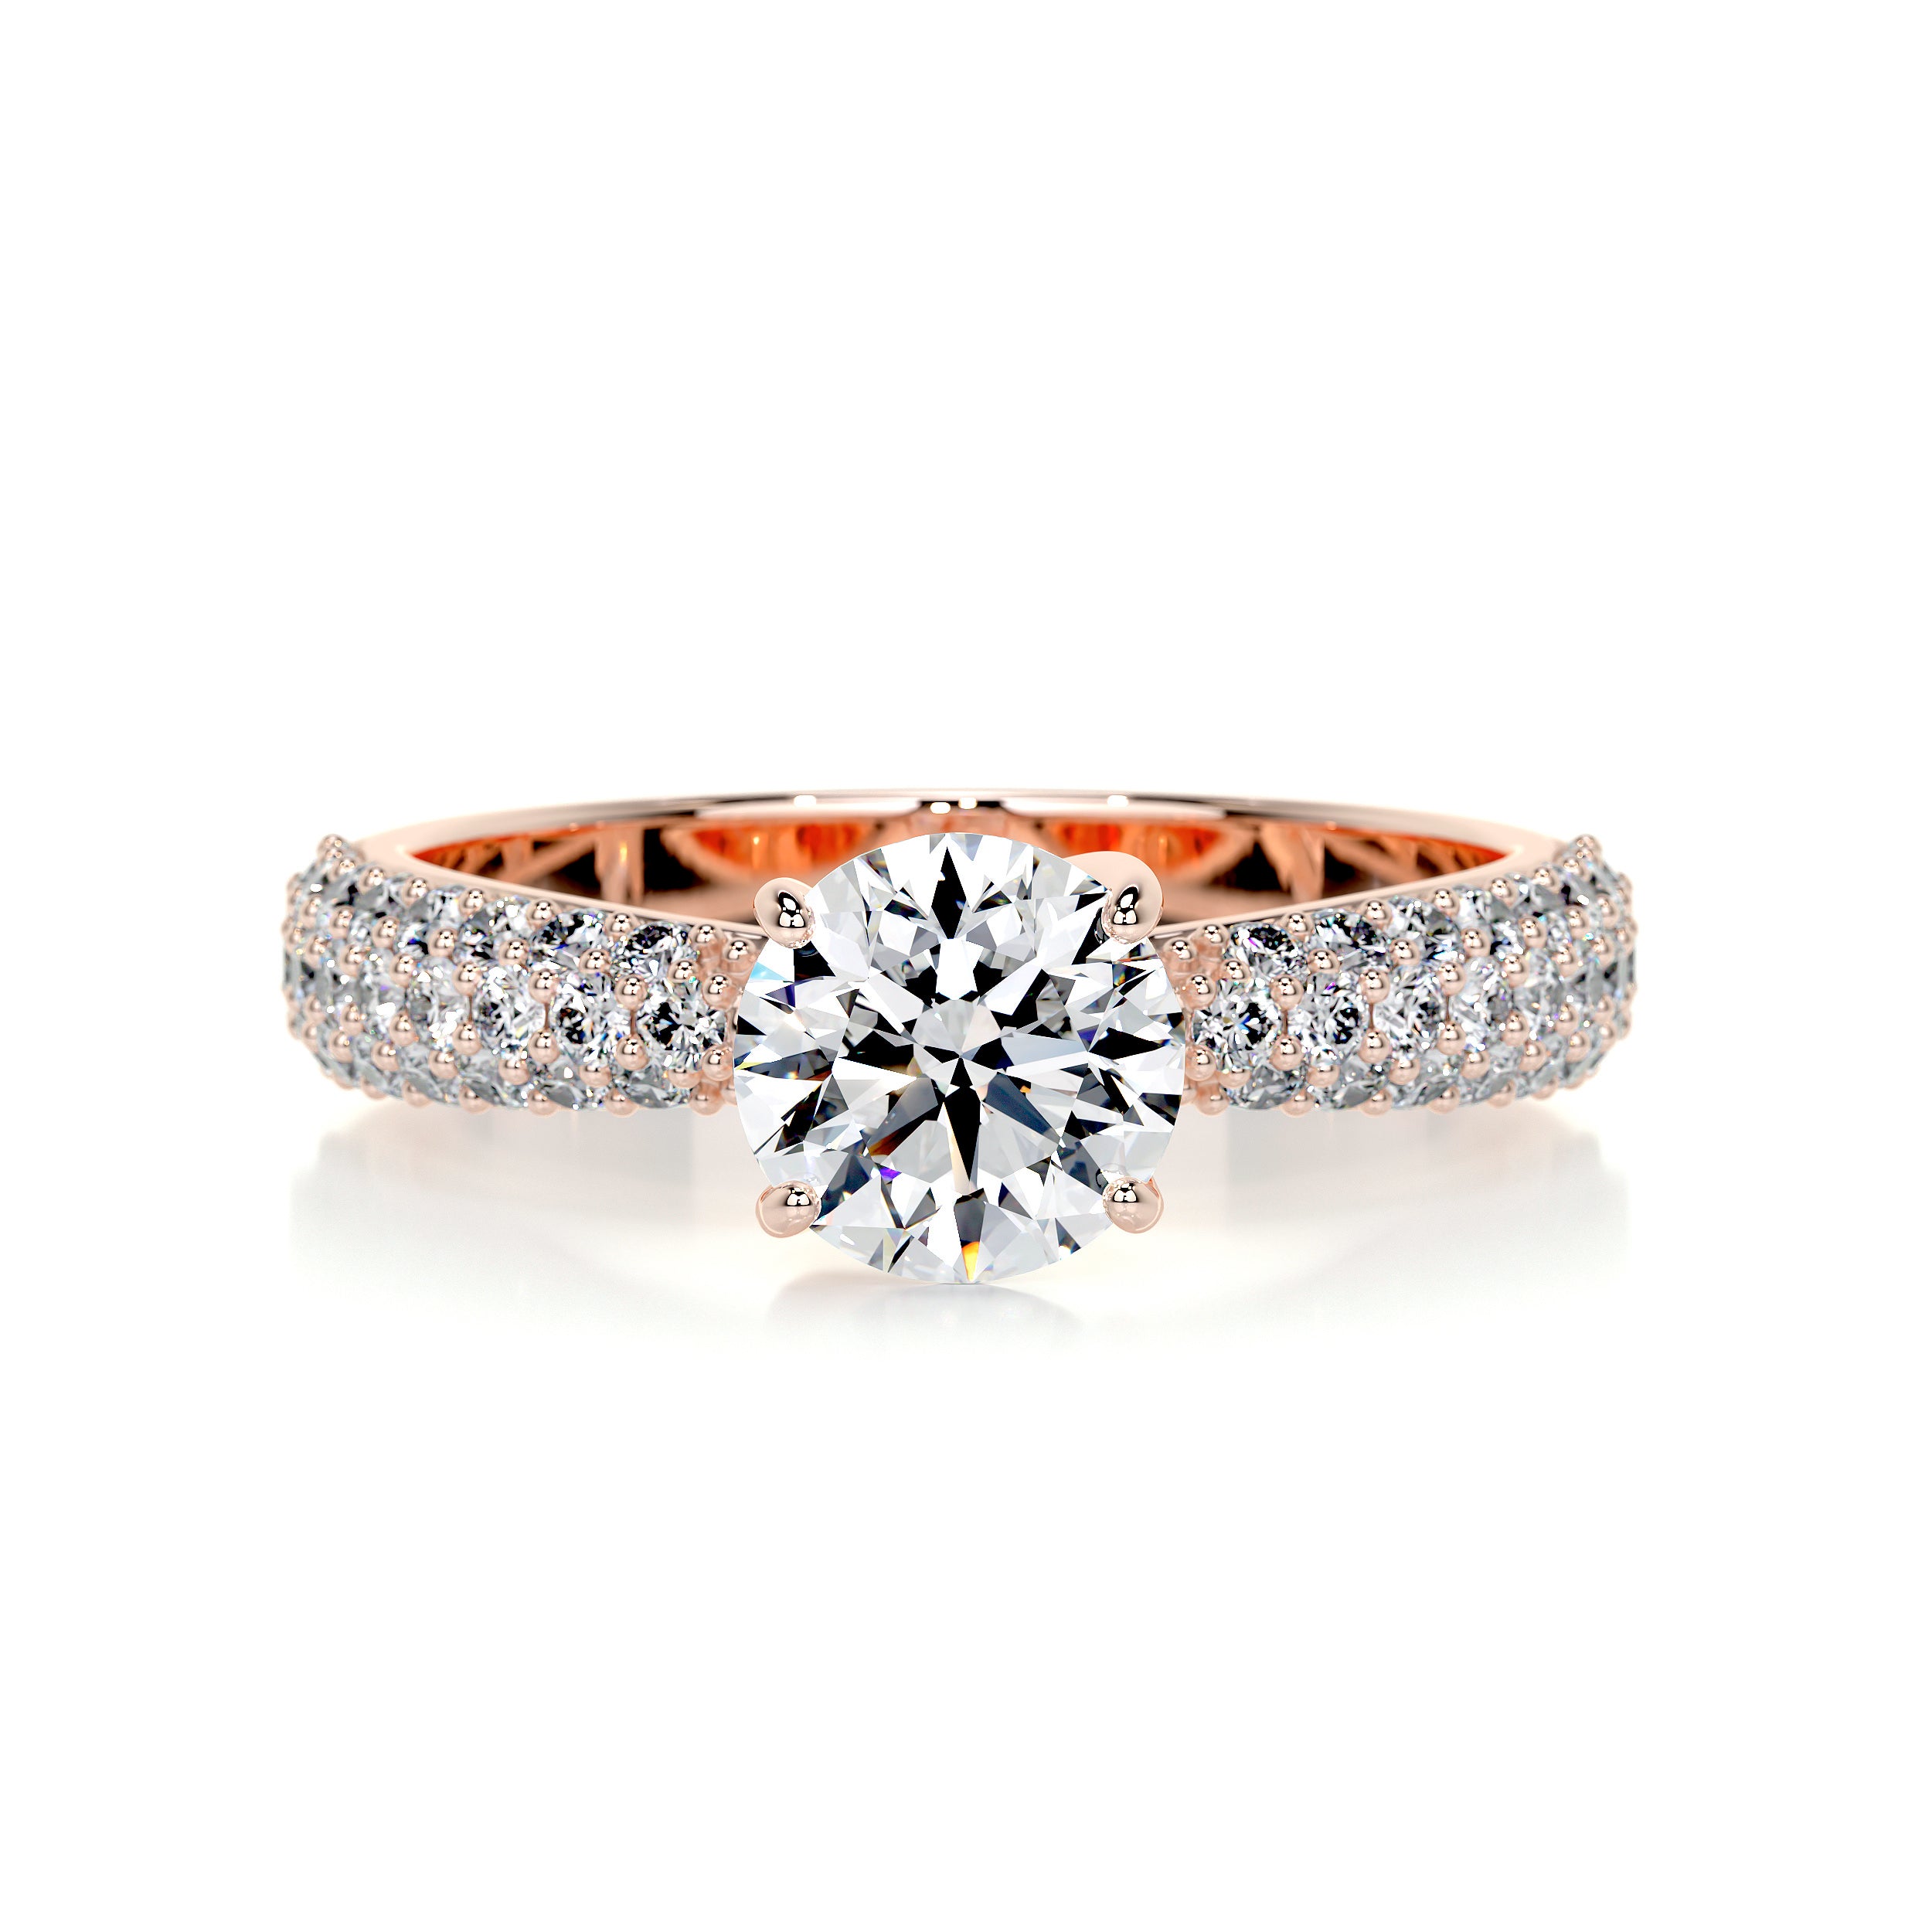 Alora Diamond Engagement Ring   (1.5 Carat) -14K Rose Gold